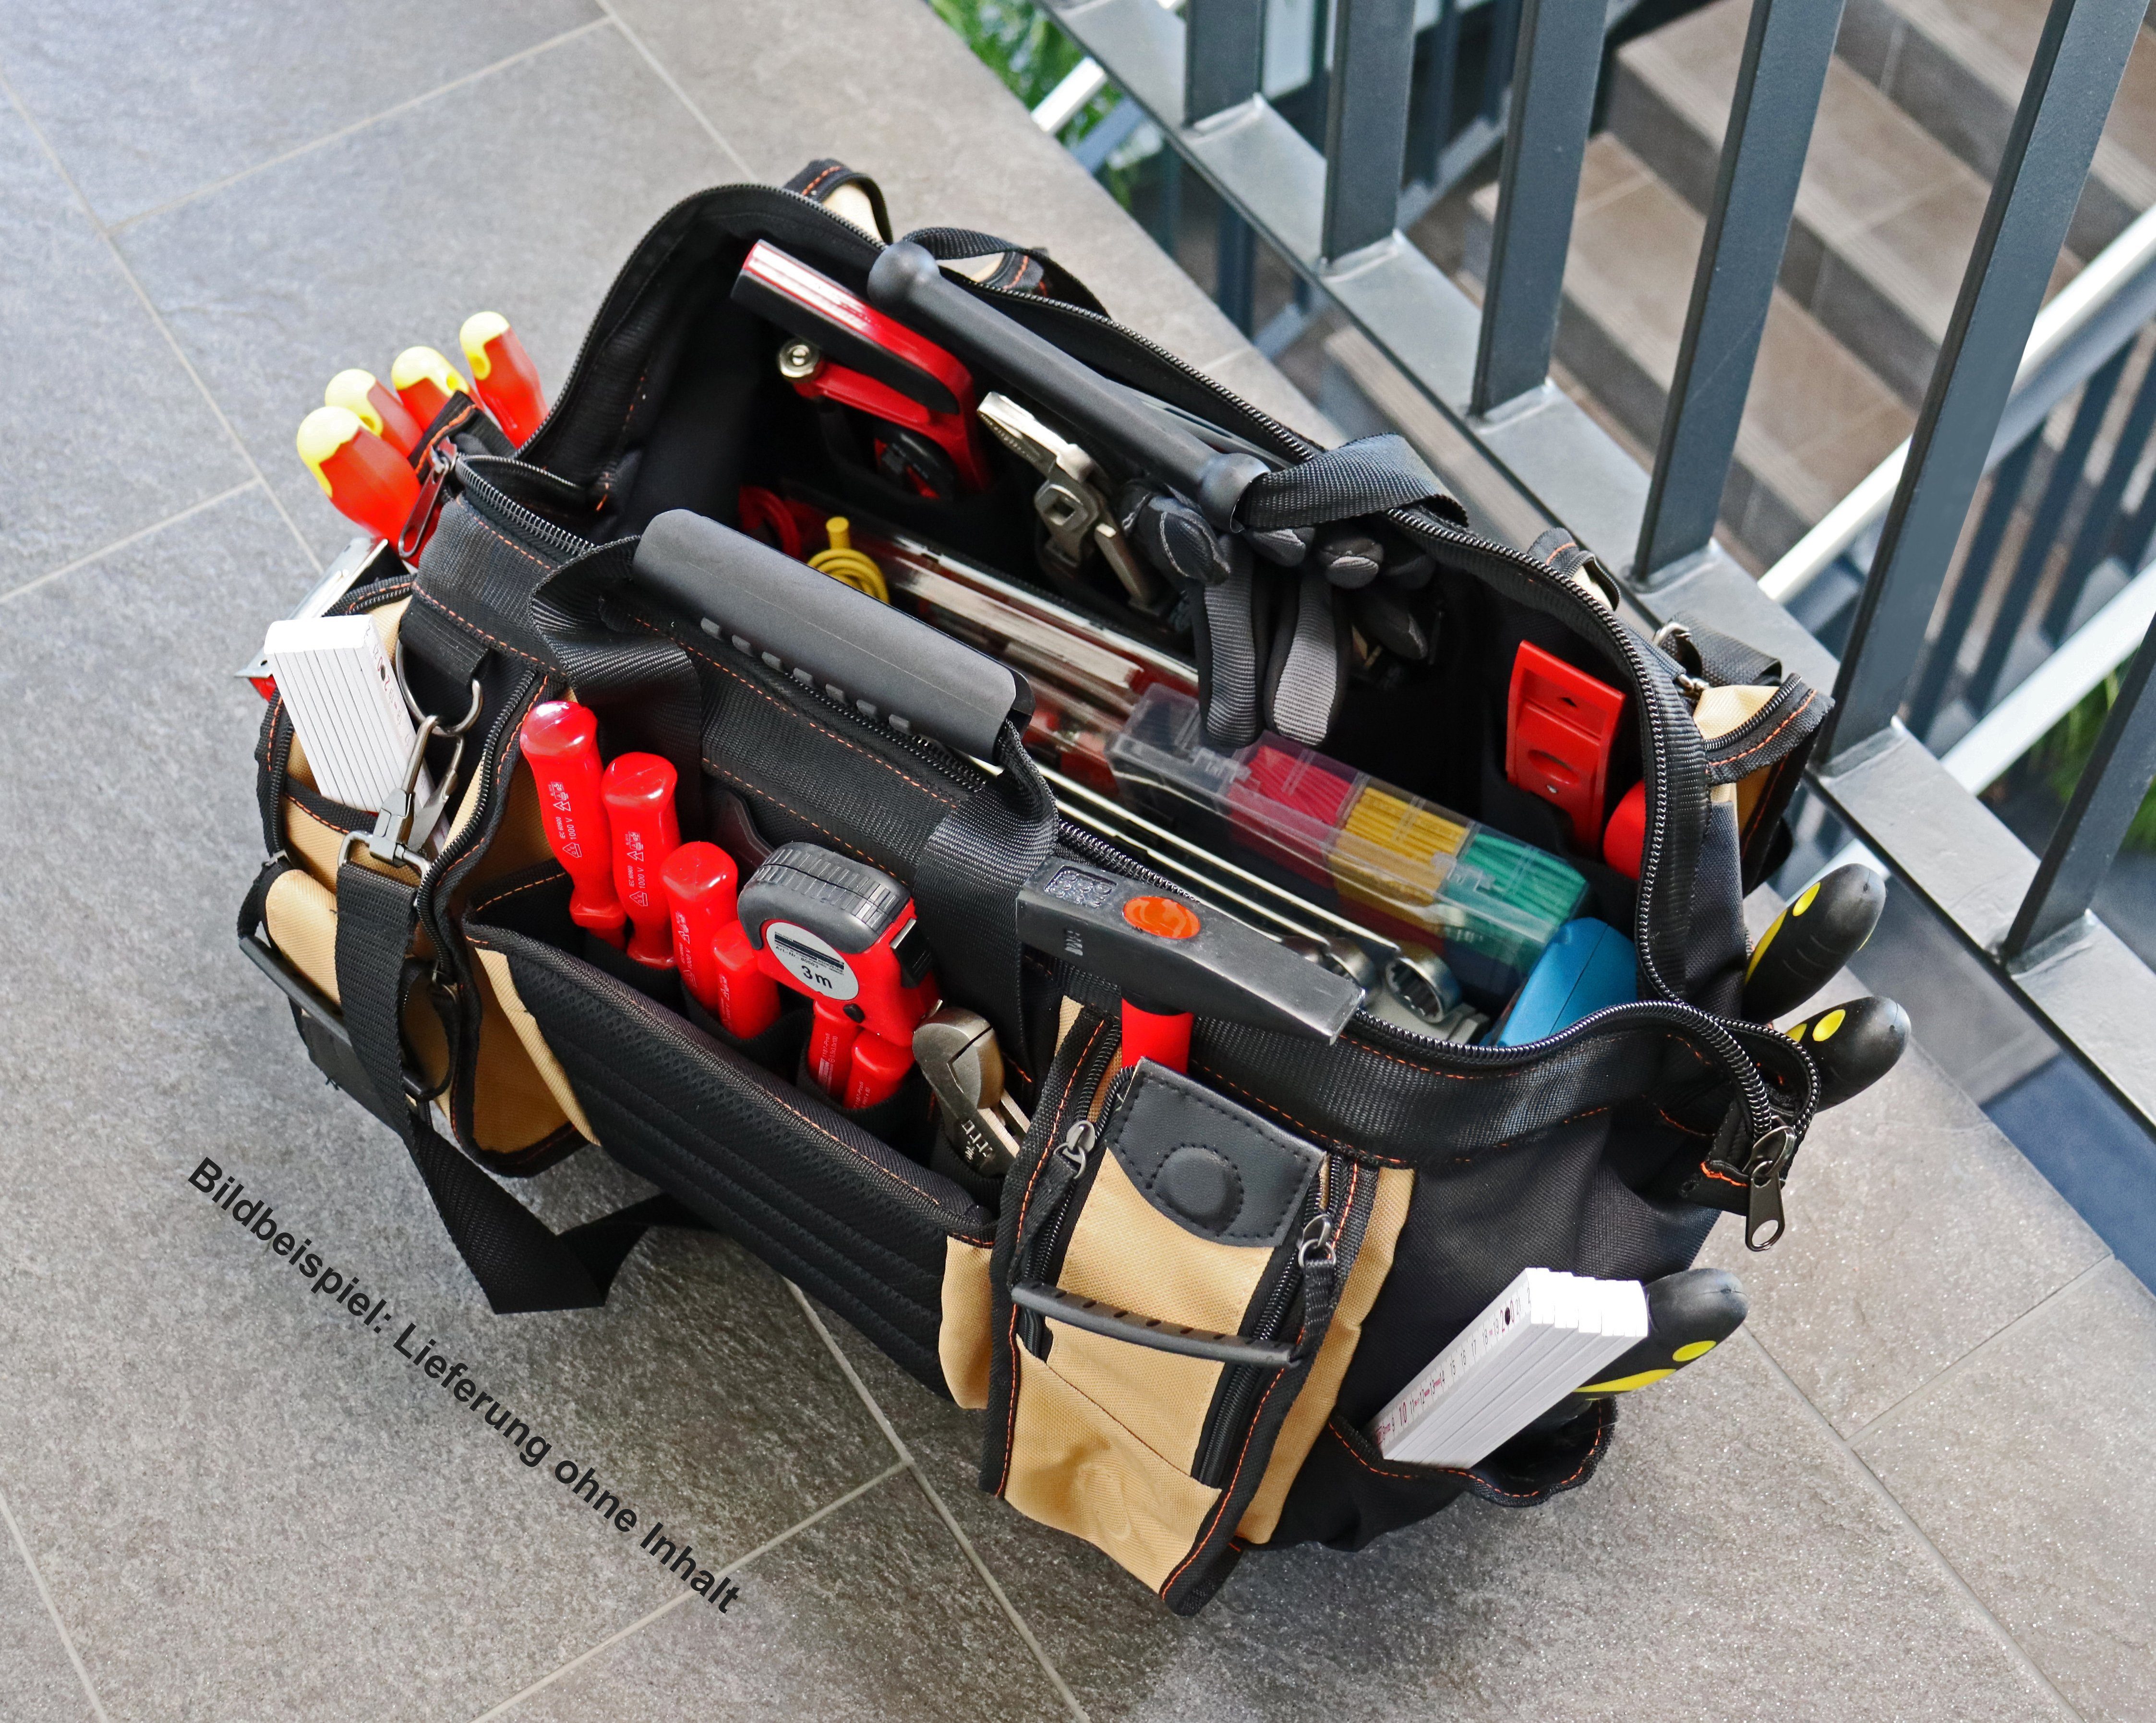 40 Umhängetasche Werkzeugtasche Liter Outdoor- Beige XXL, Sporttasche 42x30x25cm, YPC und /